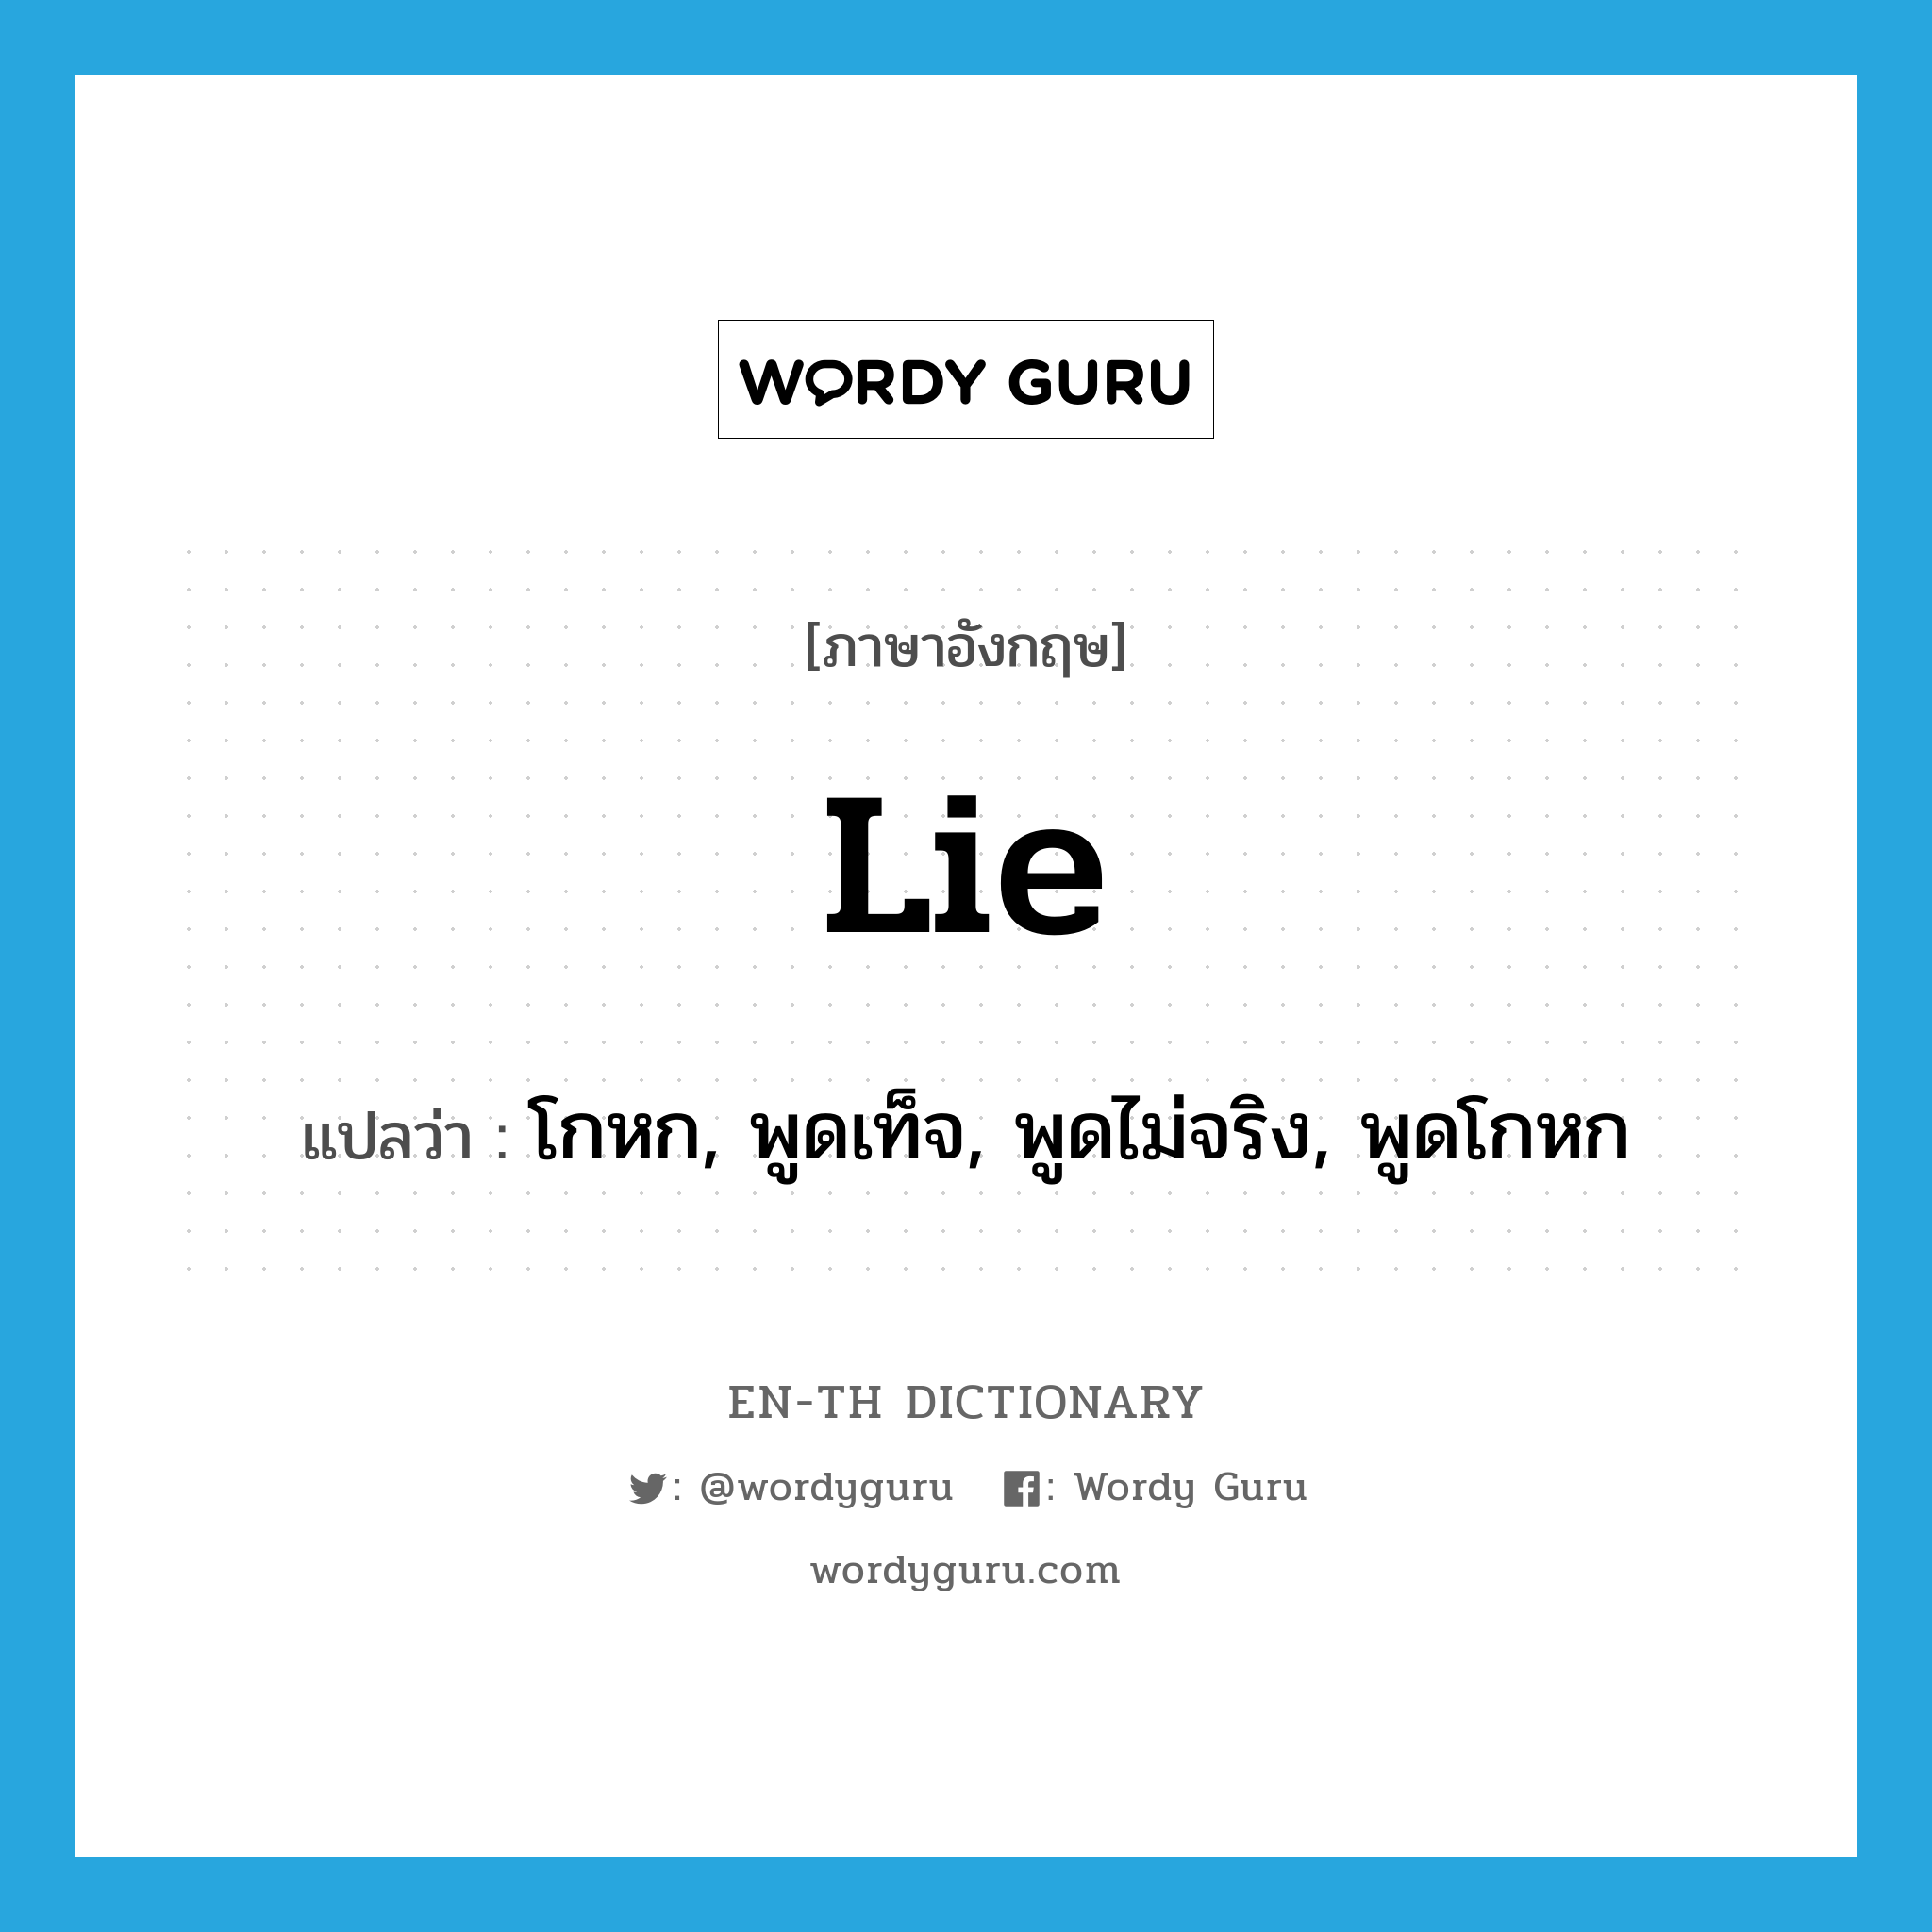 โกหก, พูดเท็จ, พูดไม่จริง, พูดโกหก ภาษาอังกฤษ?, คำศัพท์ภาษาอังกฤษ โกหก, พูดเท็จ, พูดไม่จริง, พูดโกหก แปลว่า lie ประเภท VI หมวด VI